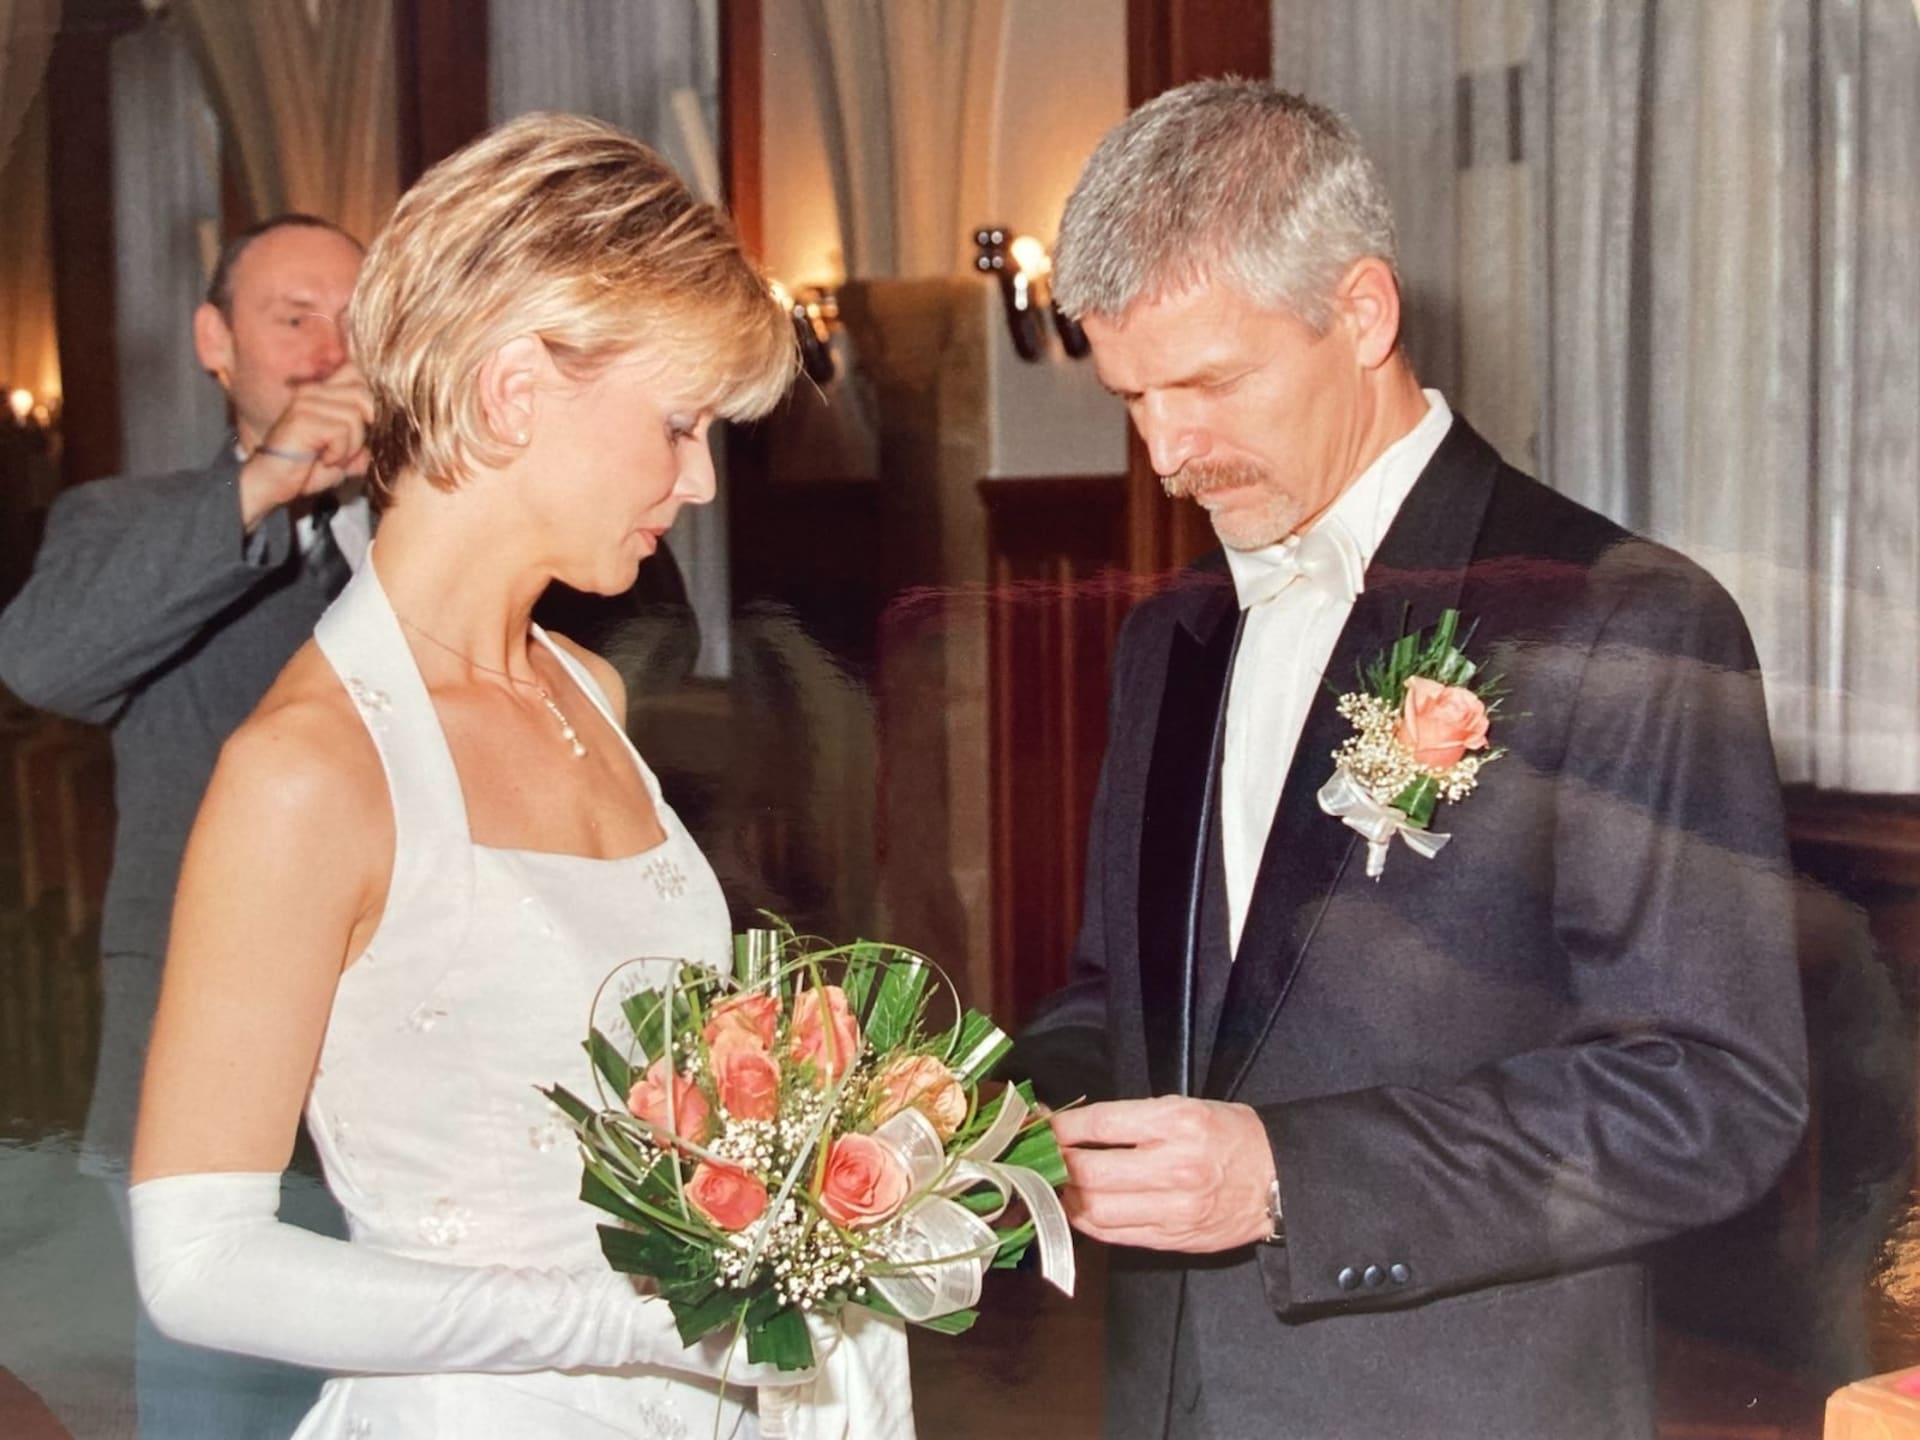 Svatba Petra Pavla s Evou Pavlovou proběhla v Olomouci v roce 2004.